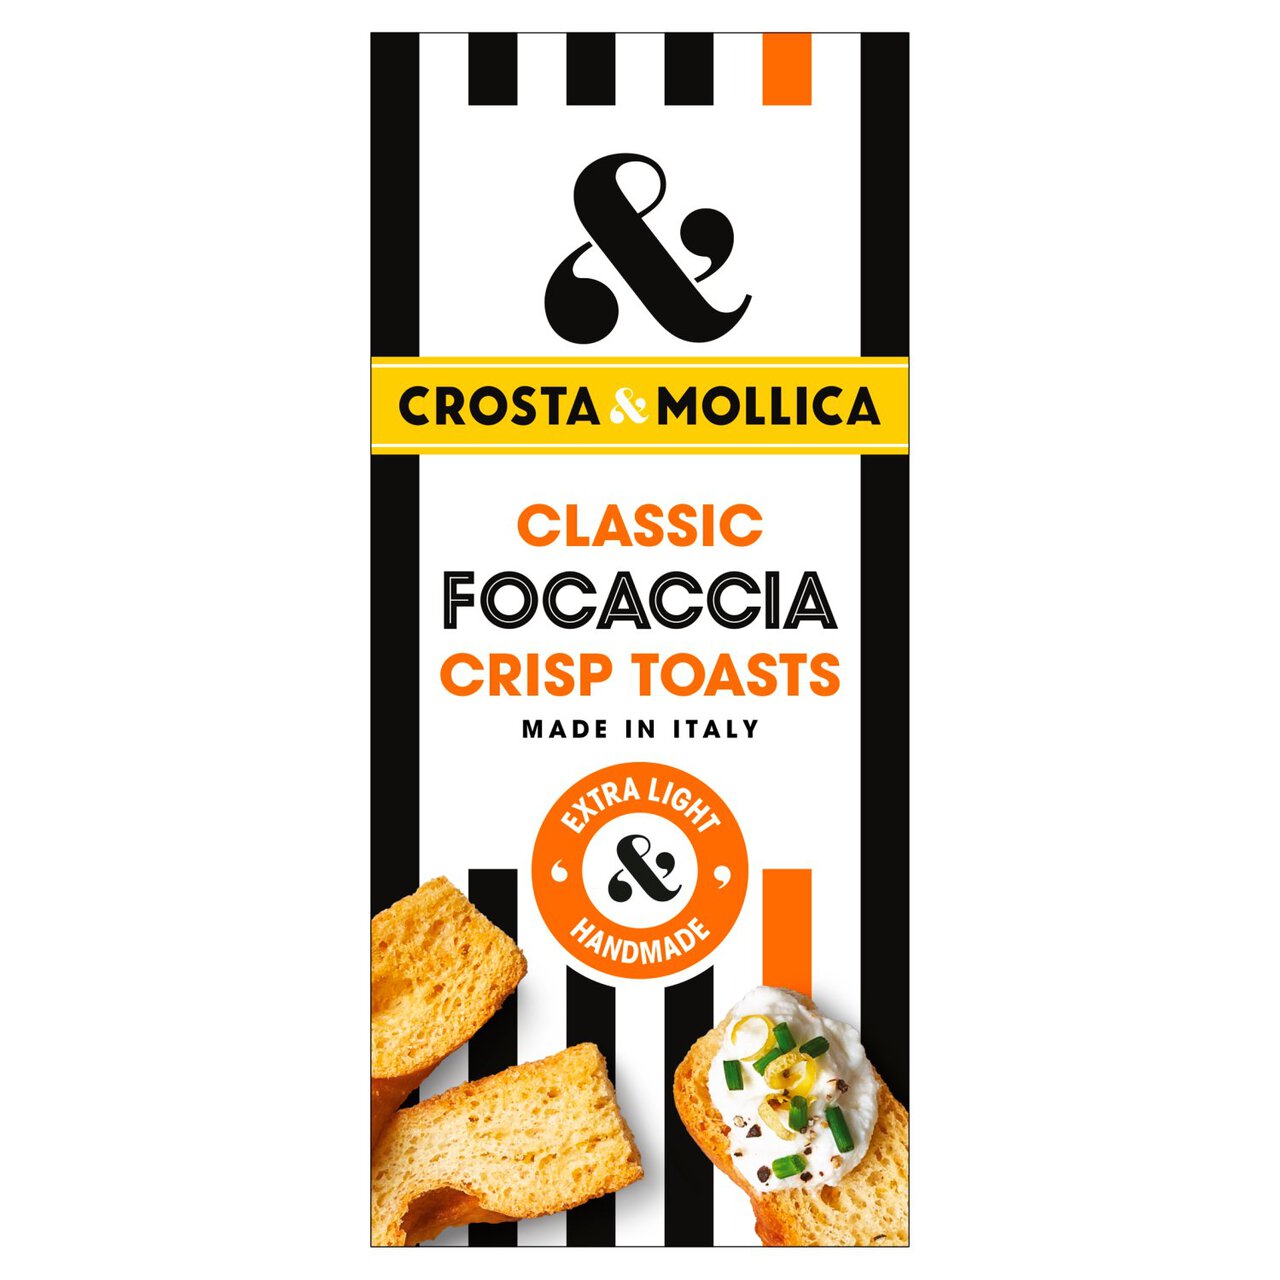 Crosta & Mollica Classic Focaccia Crisp Toasts 80g